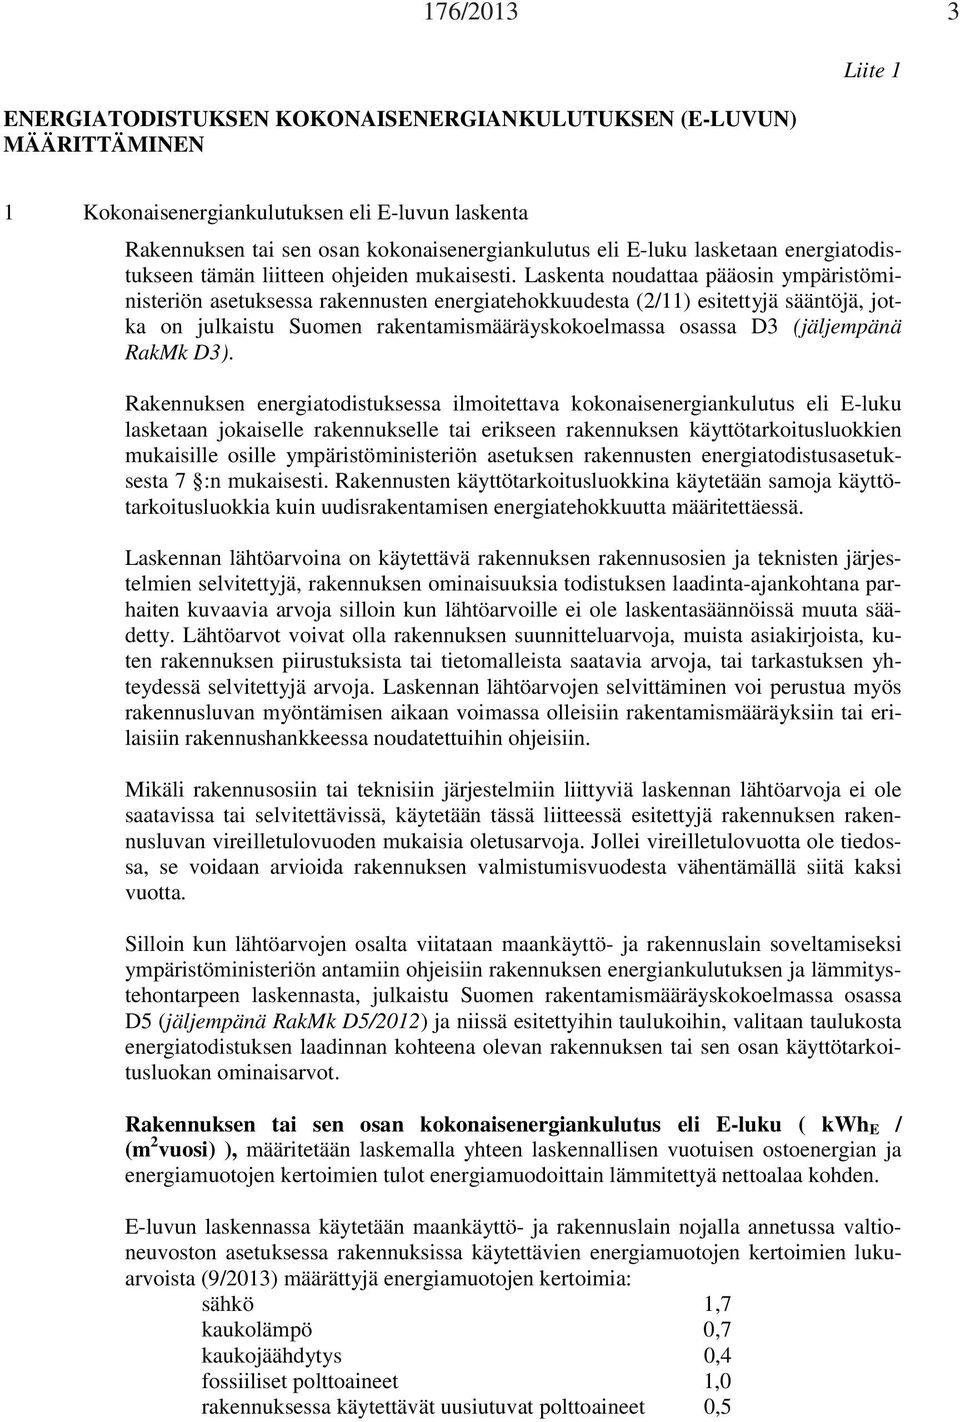 Laskenta noudattaa pääosin ympäristöministeriön asetuksessa rakennusten energiatehokkuudesta (2/11) esitettyjä sääntöjä, jotka on julkaistu Suomen rakentamismääräyskokoelmassa osassa D3 (jäljempänä